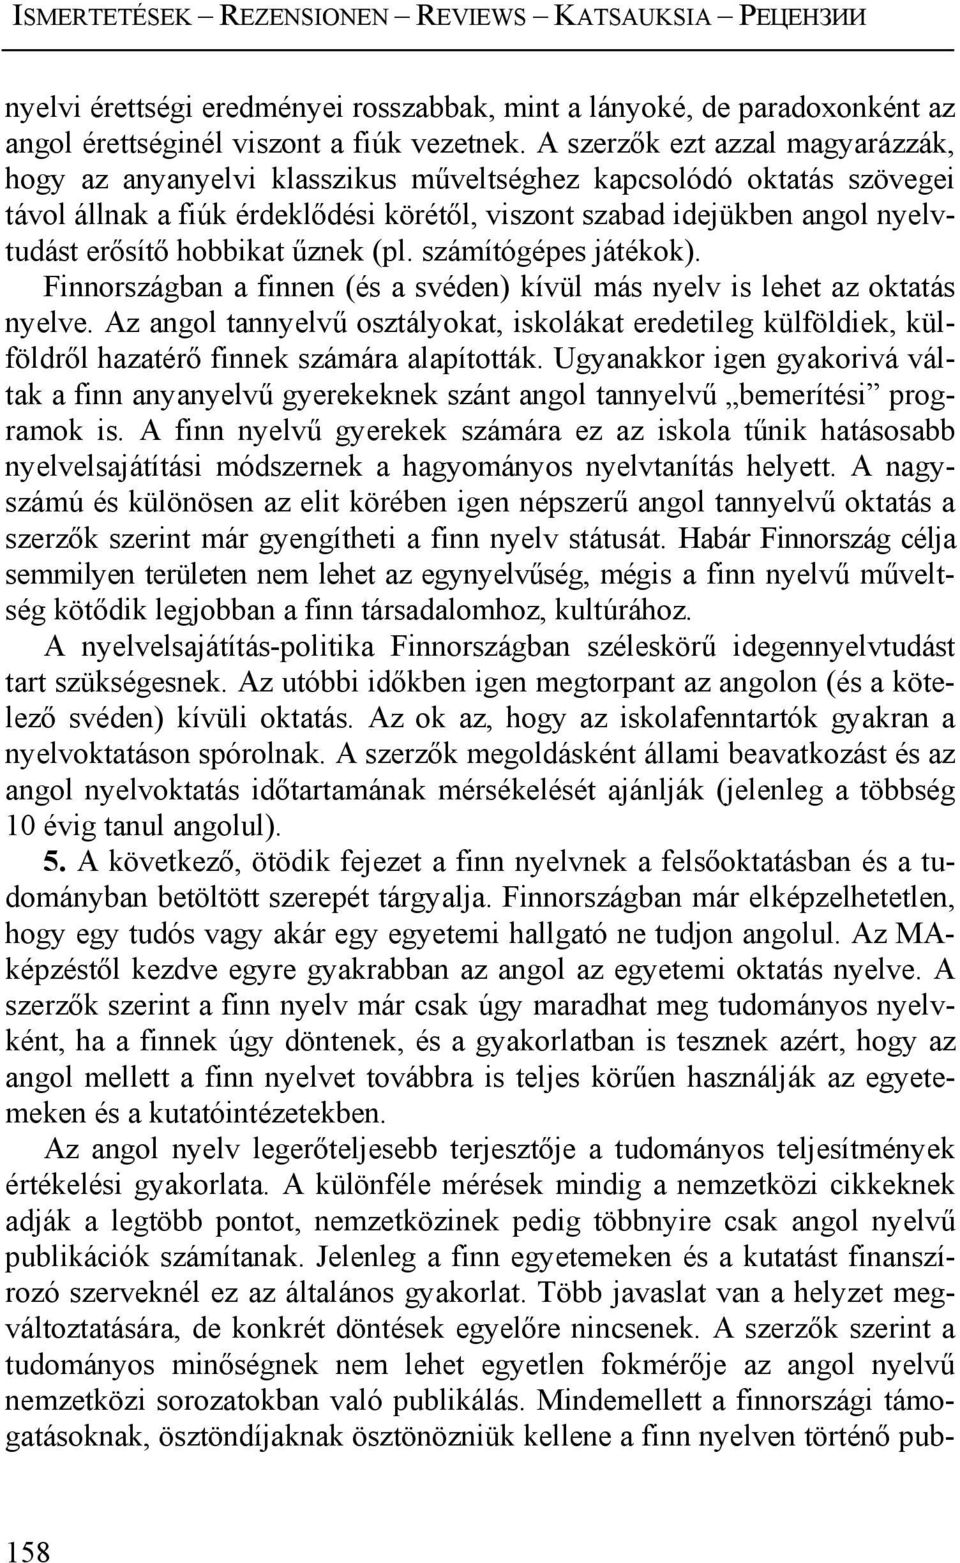 hobbikat űznek (pl. számítógépes játékok). Finnországban a finnen (és a svéden) kívül más nyelv is lehet az oktatás nyelve.